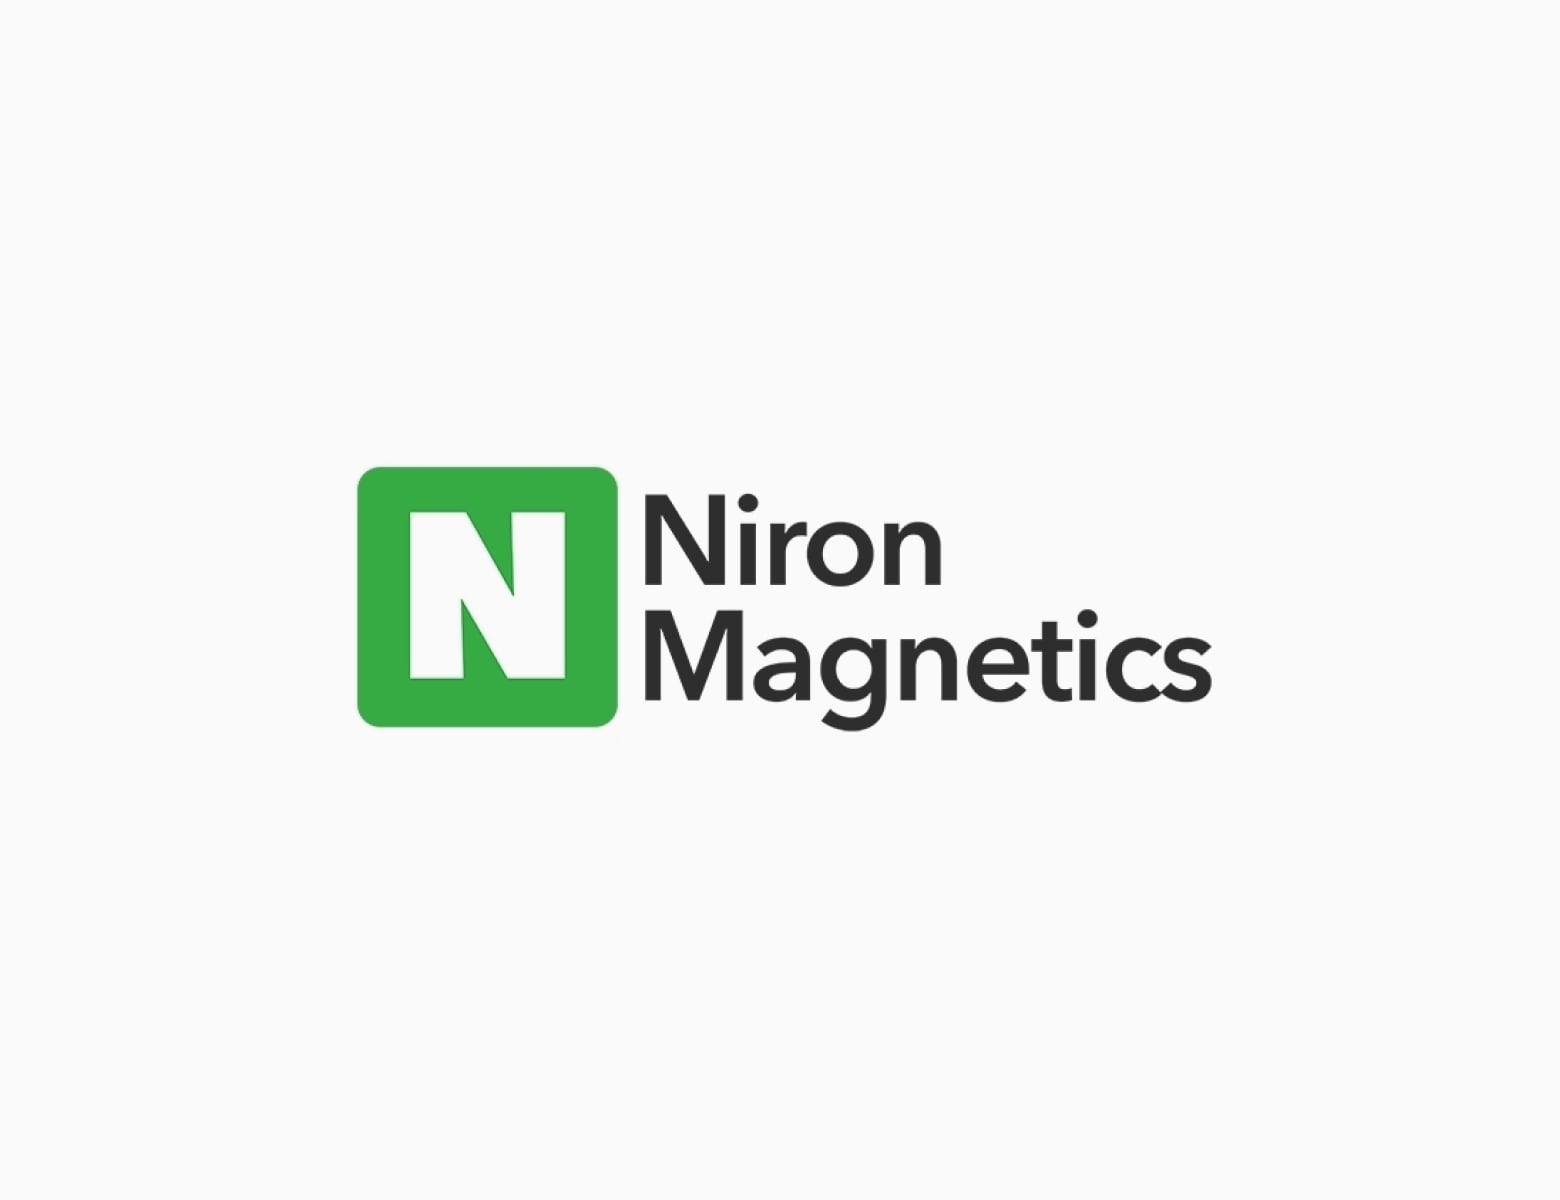 Niron Magnetics logo